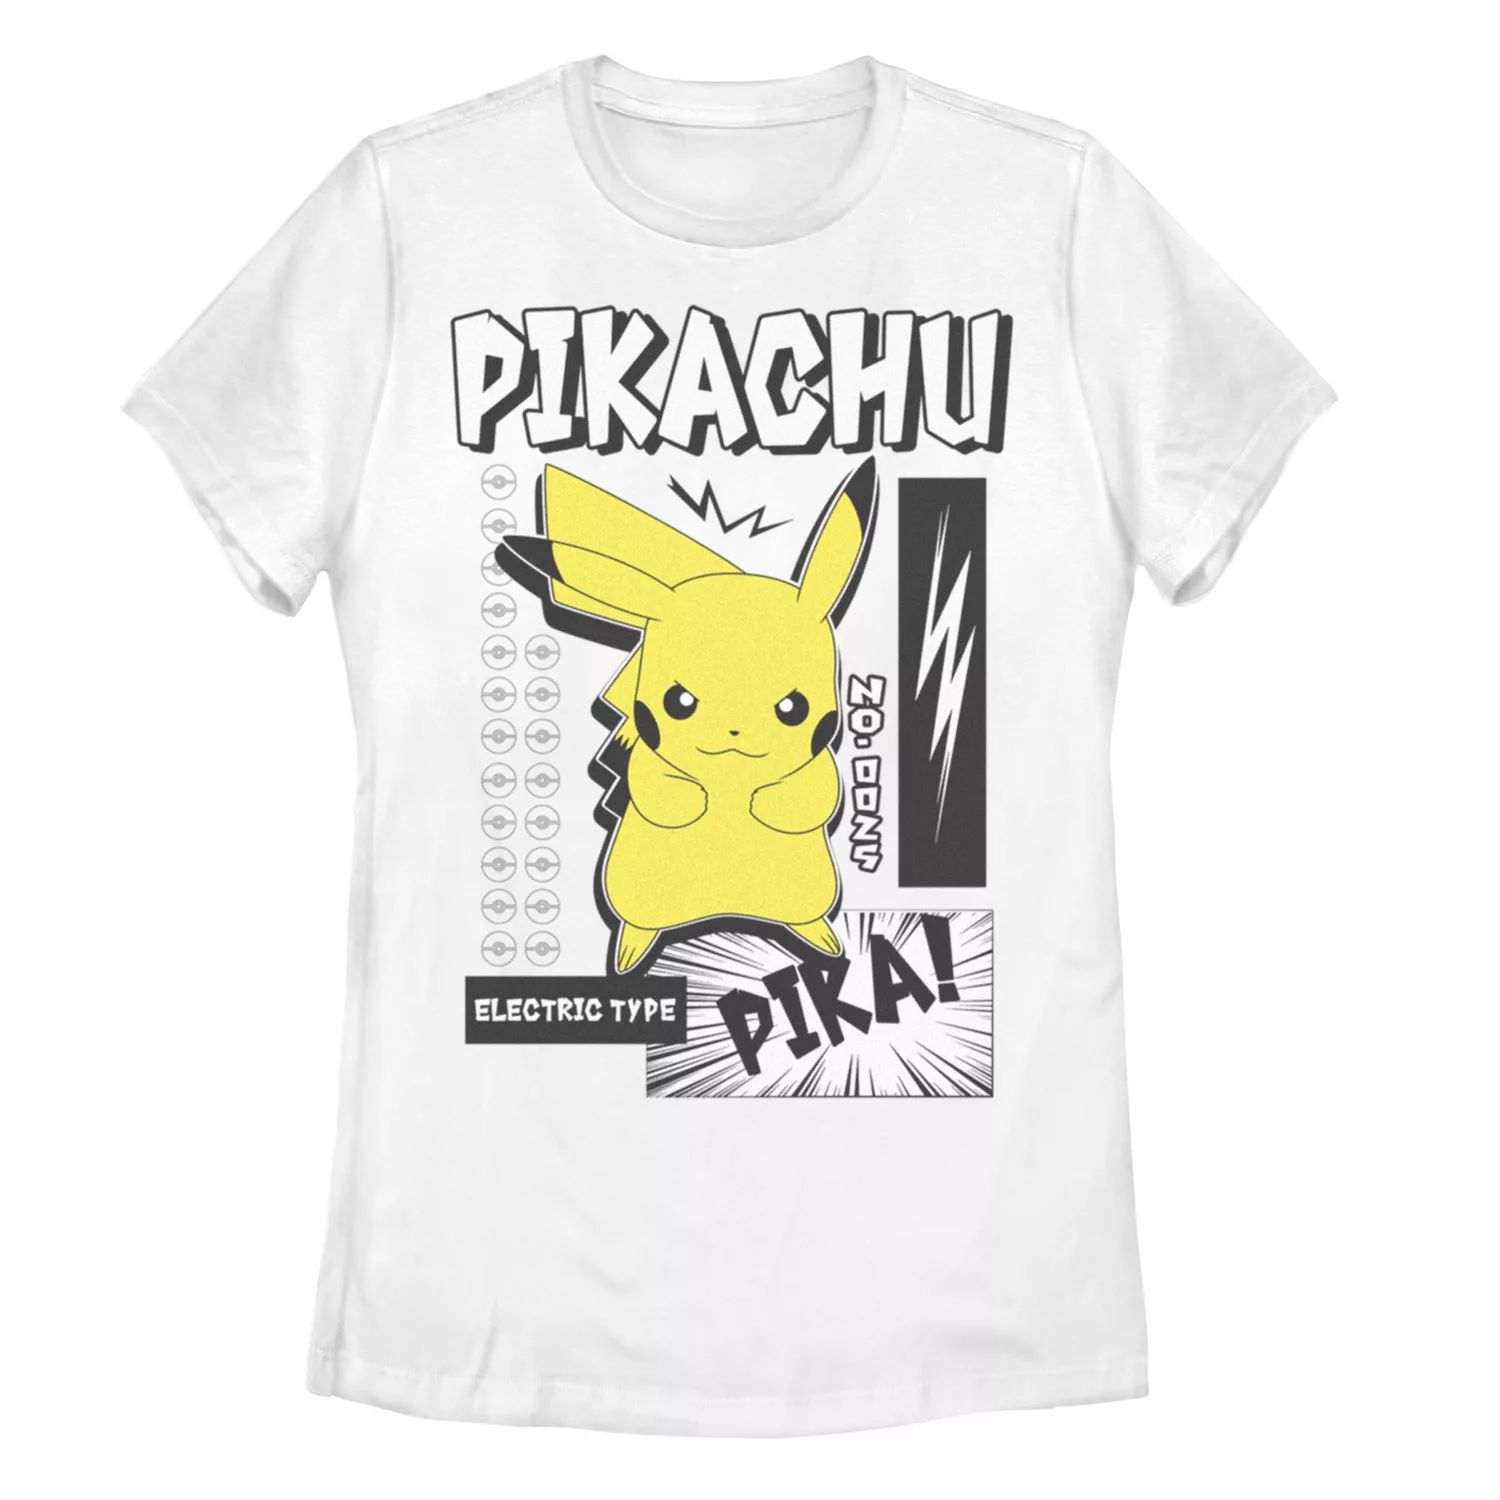 Детская футболка с рисунком Pokemon Pikachu Electric Type Pika Bam Licensed Character набор pokemon фигурка pikachu metallic стикерпак pika 2